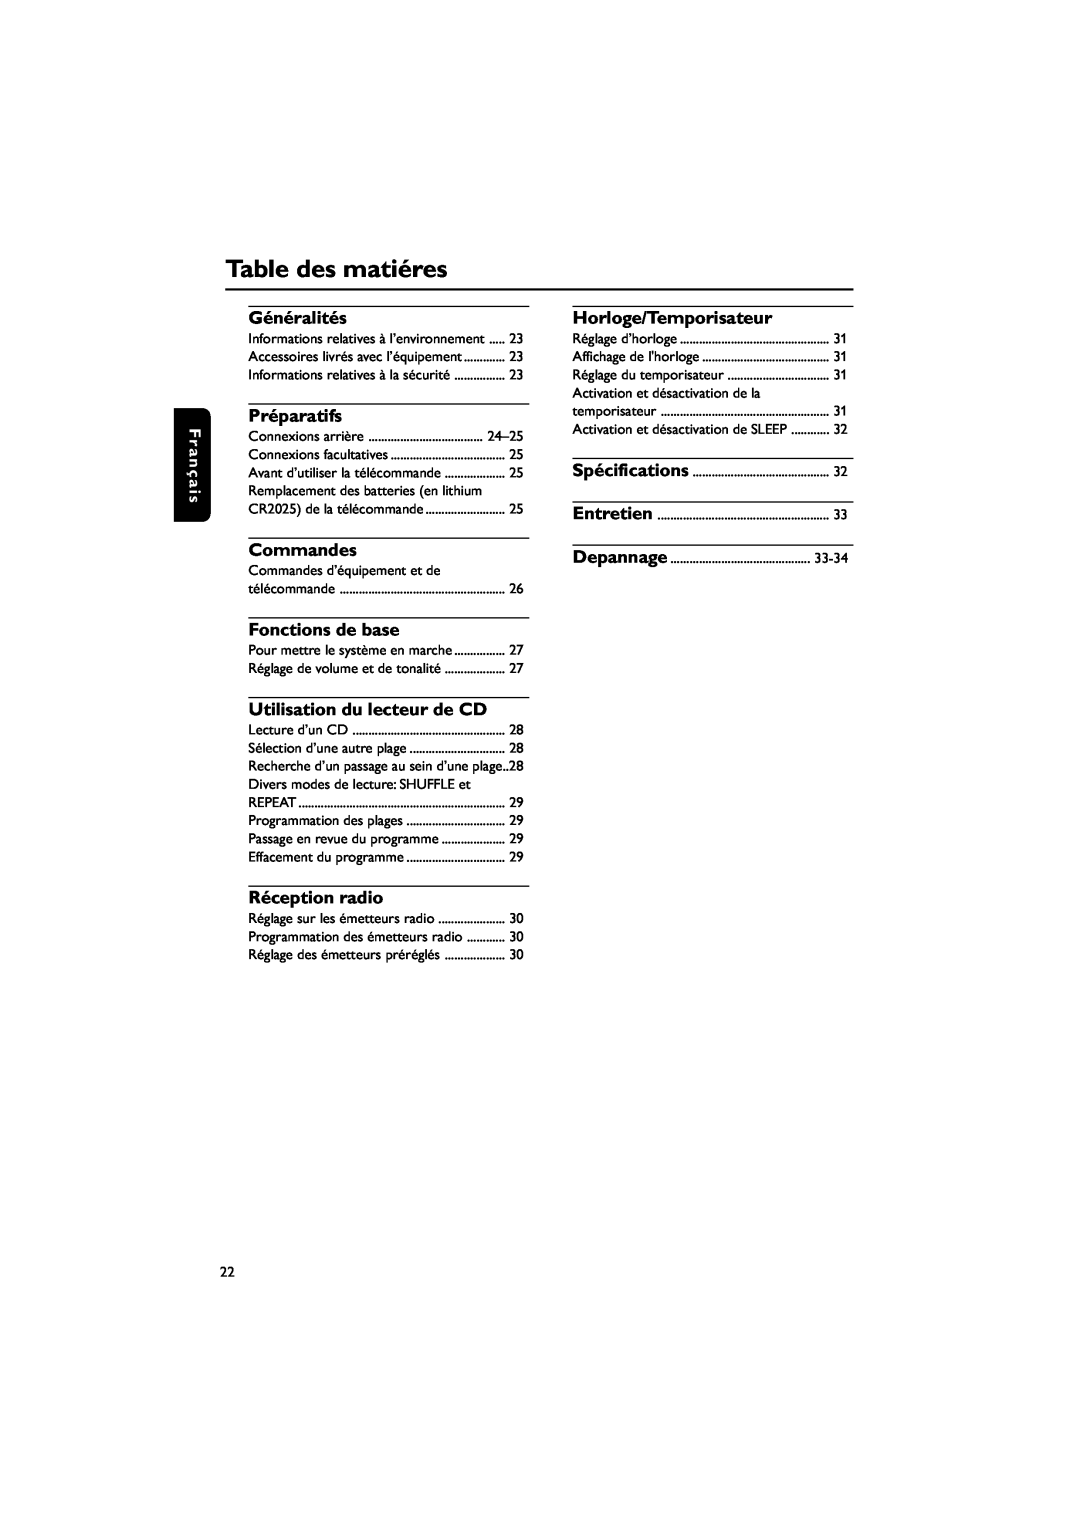 Philips MC235B/37 Table des matiéres, Généralités, Préparatifs, Commandes, Fonctions de base, Utilisation du lecteur de CD 